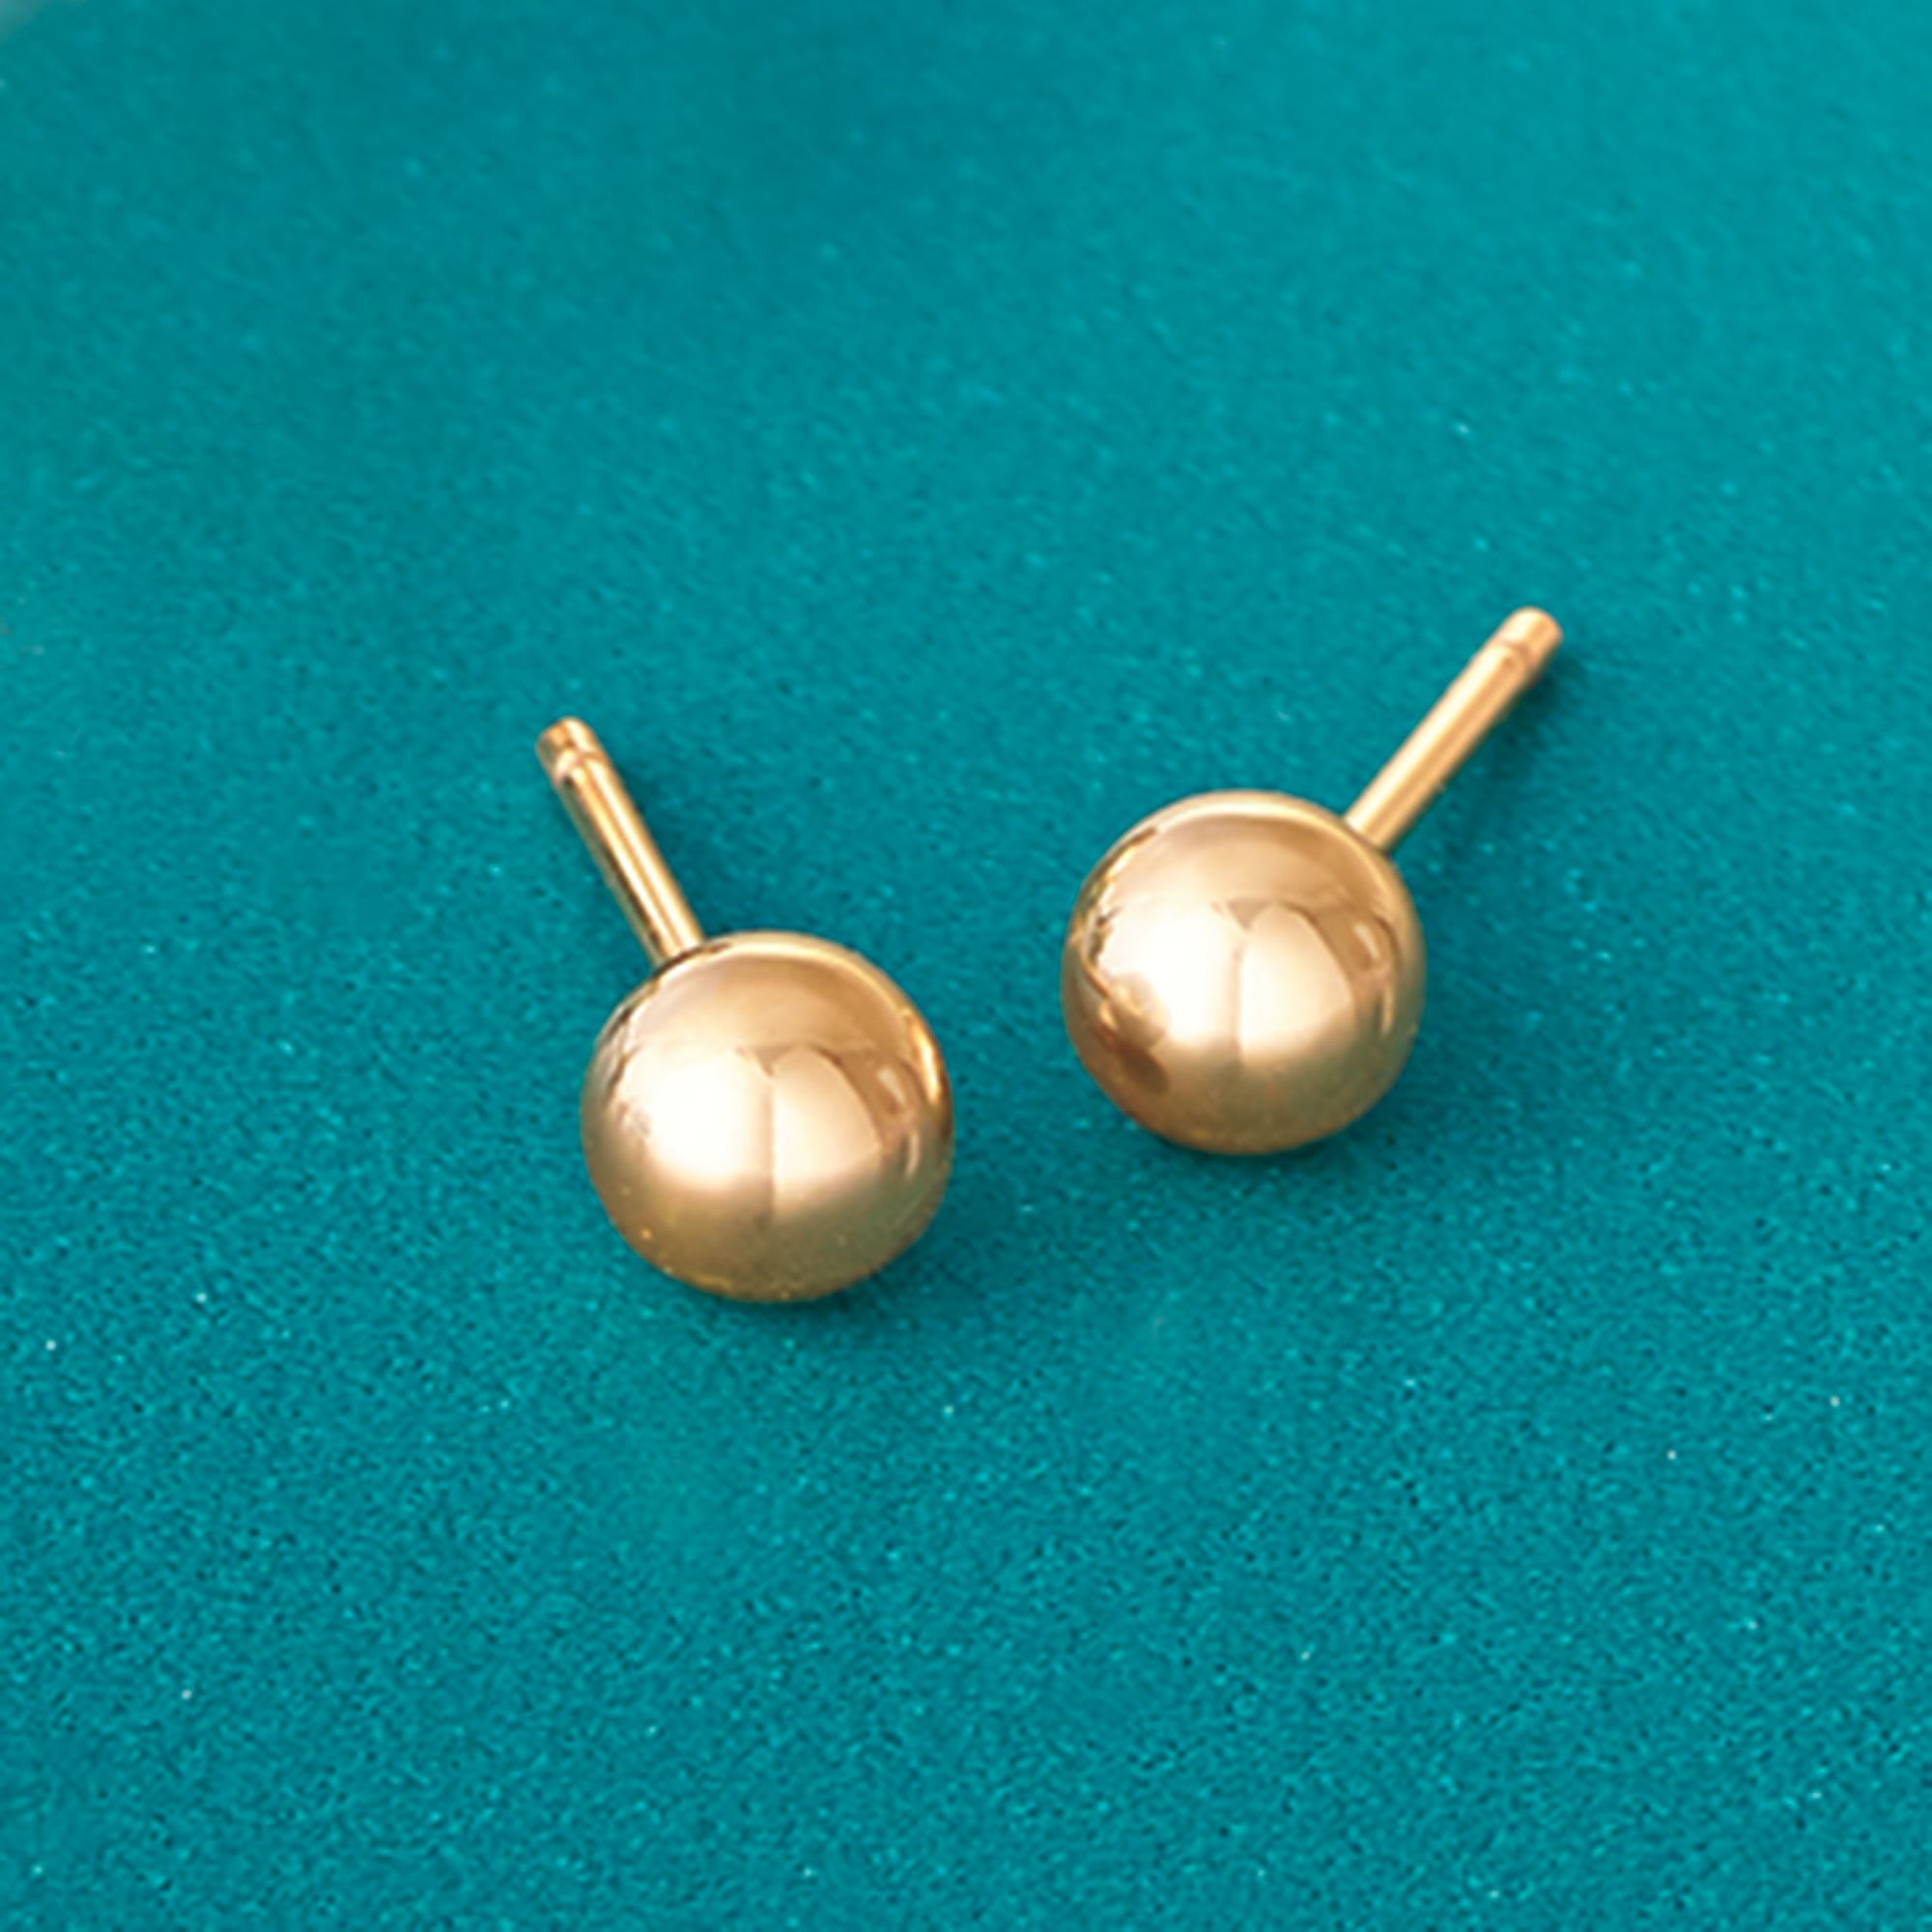 4mm 14kt Yellow Gold Ball Stud Earrings | Ross-Simons